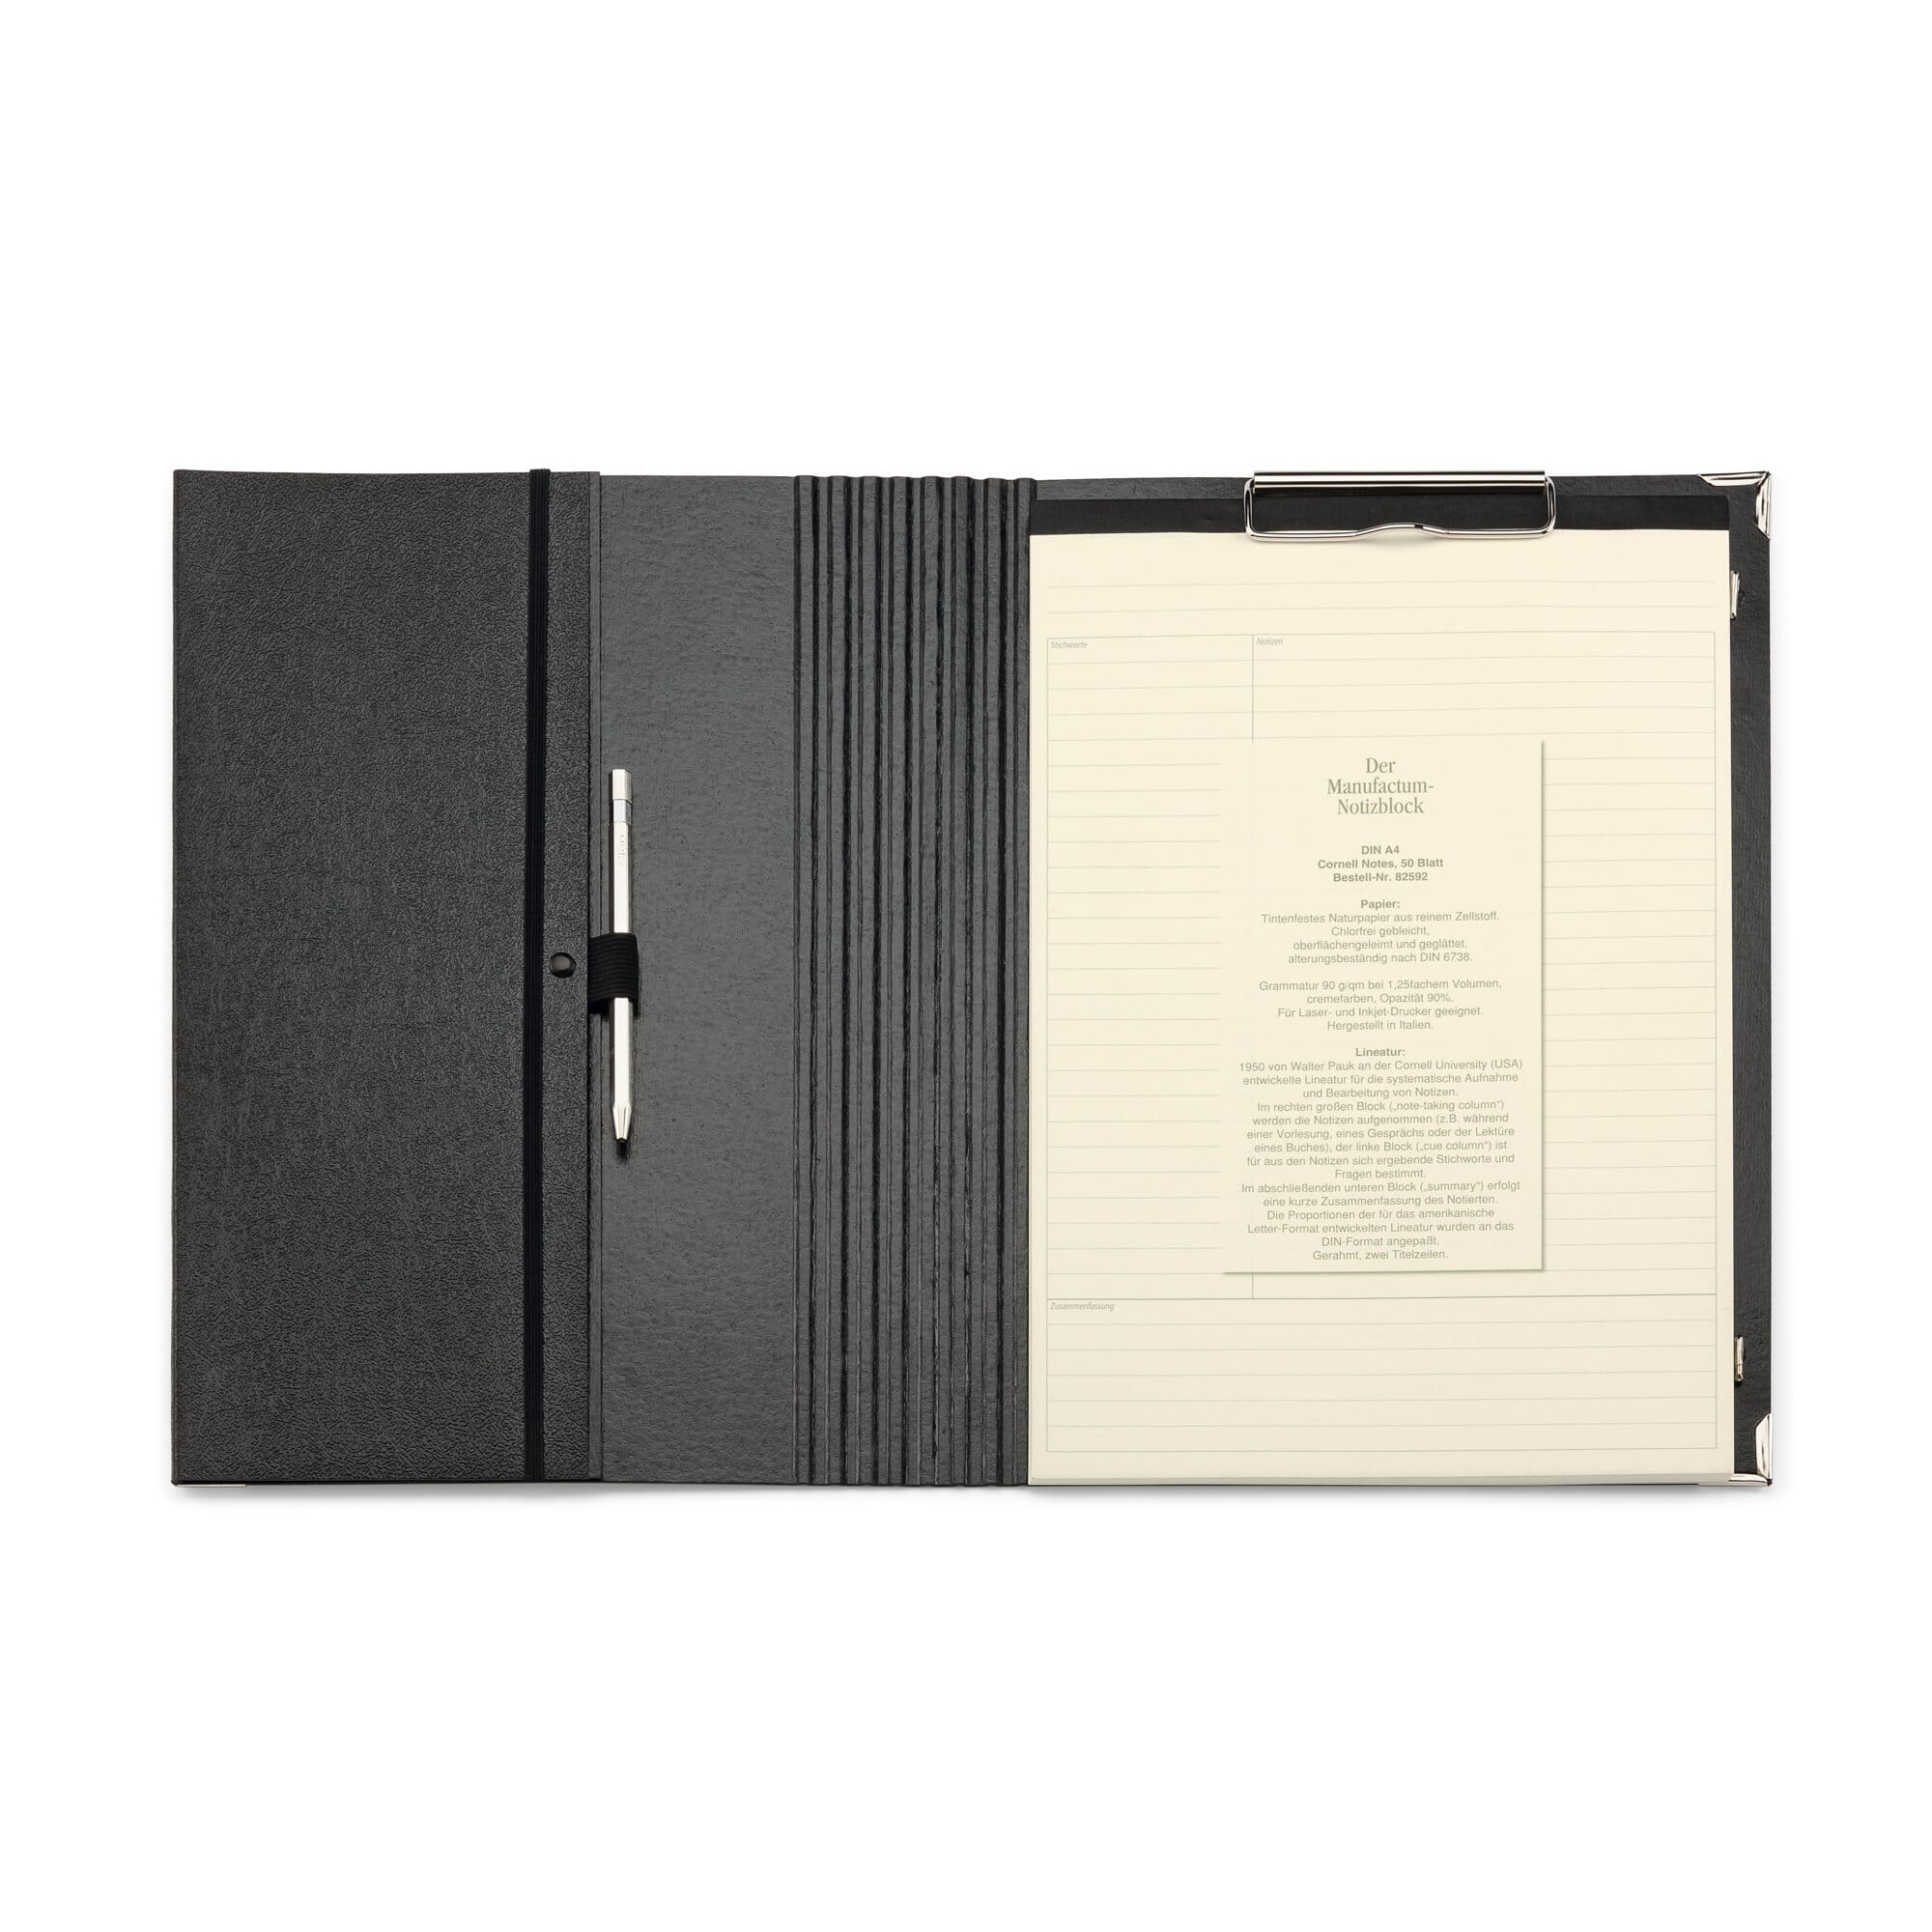 Dokumentenmappe nutzbar als Schreibmappe Linen inkl Schreibblock Grau 30,5 x 23,5 x 1,2 cm A4 Format Portfolio Din A4